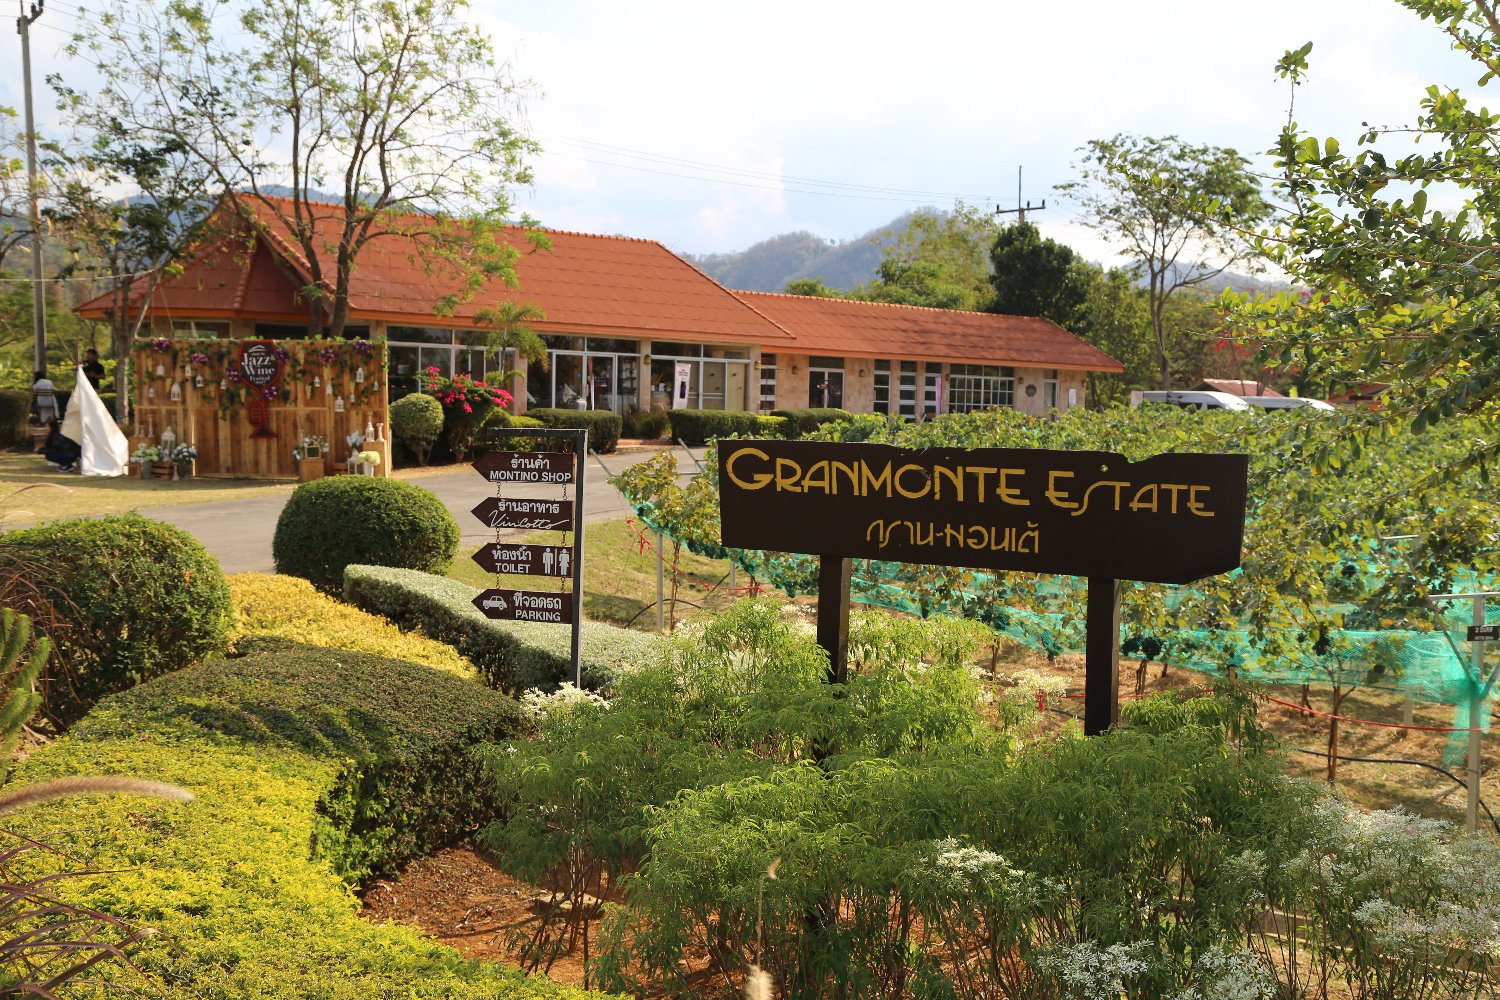 GranMonte Estate